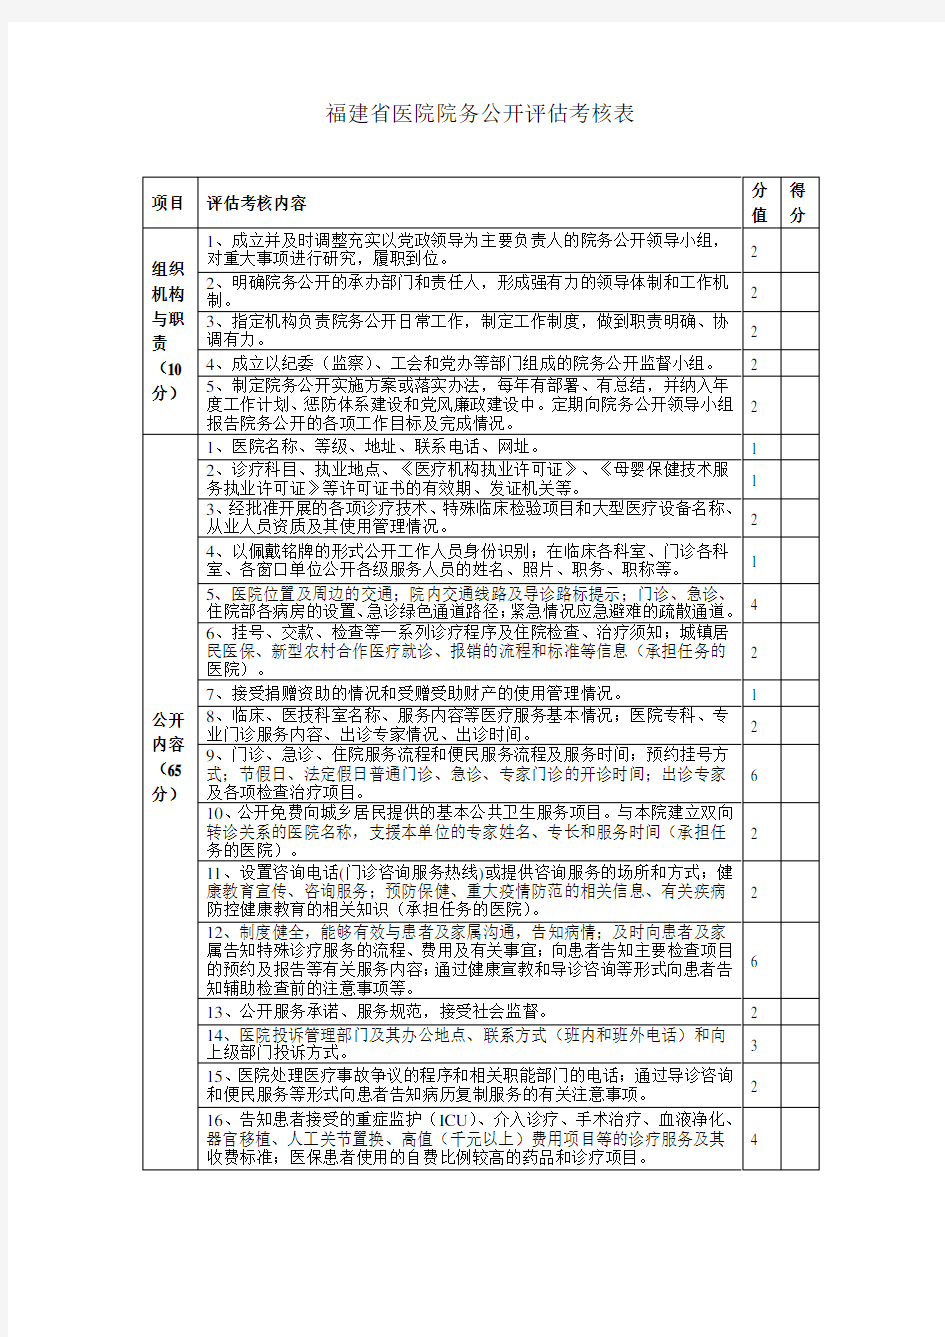 福建省医院院务公开评估考核表(1)